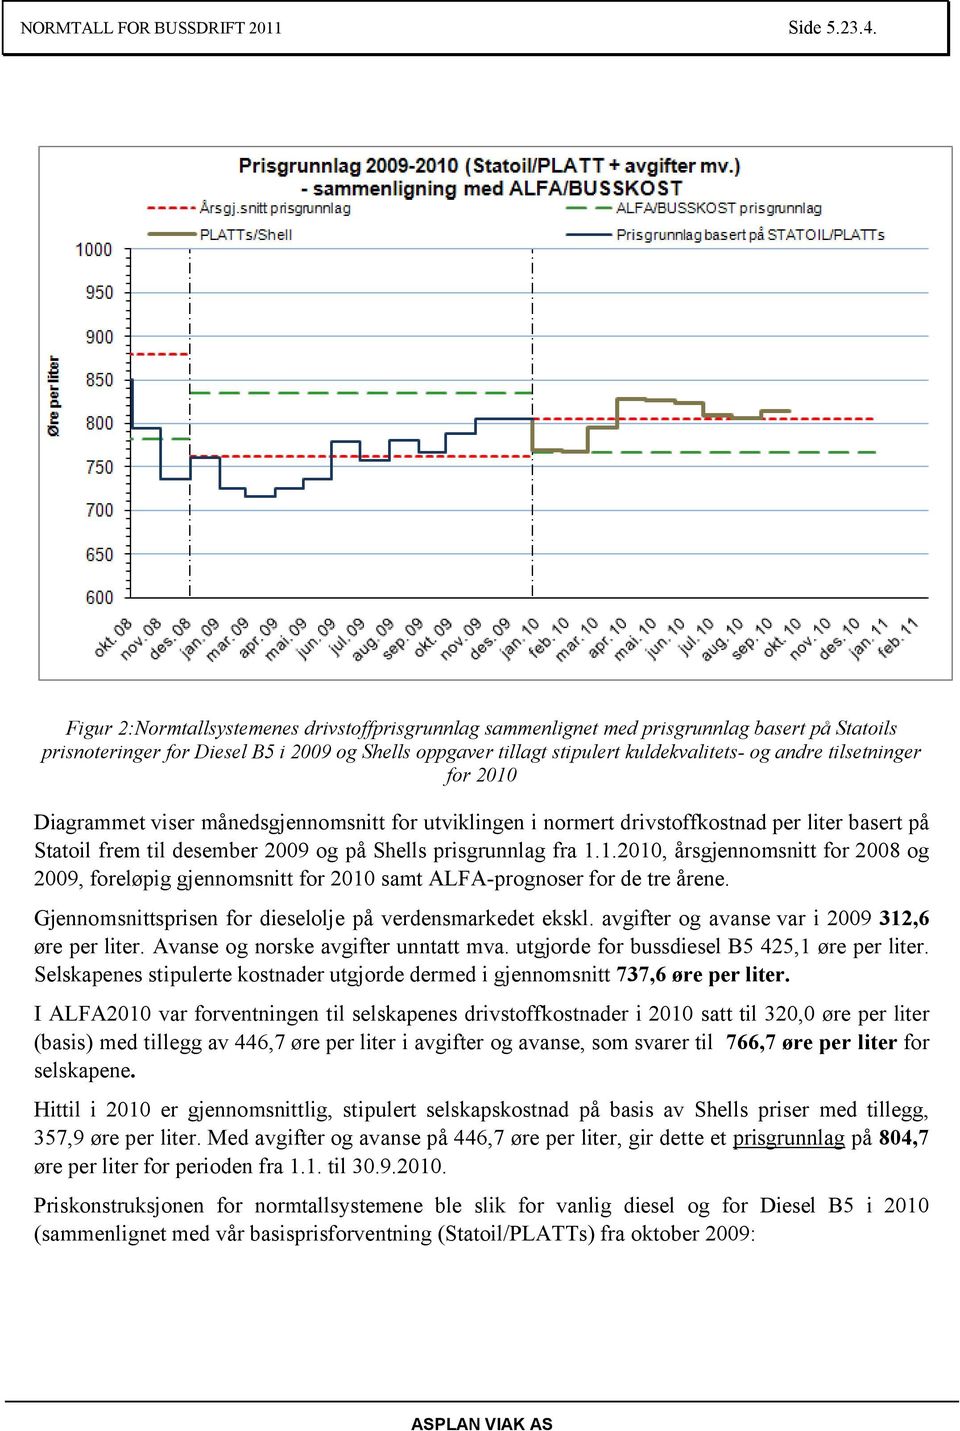 tilsetninger for 2010 Diagrammet viser månedsgjennomsnitt for utviklingen i normert drivstoffkostnad per liter basert på Statoil frem til desember 2009 og på Shells prisgrunnlag fra 1.1.2010, årsgjennomsnitt for 2008 og 2009, foreløpig gjennomsnitt for 2010 samt ALFA-prognoser for de tre årene.